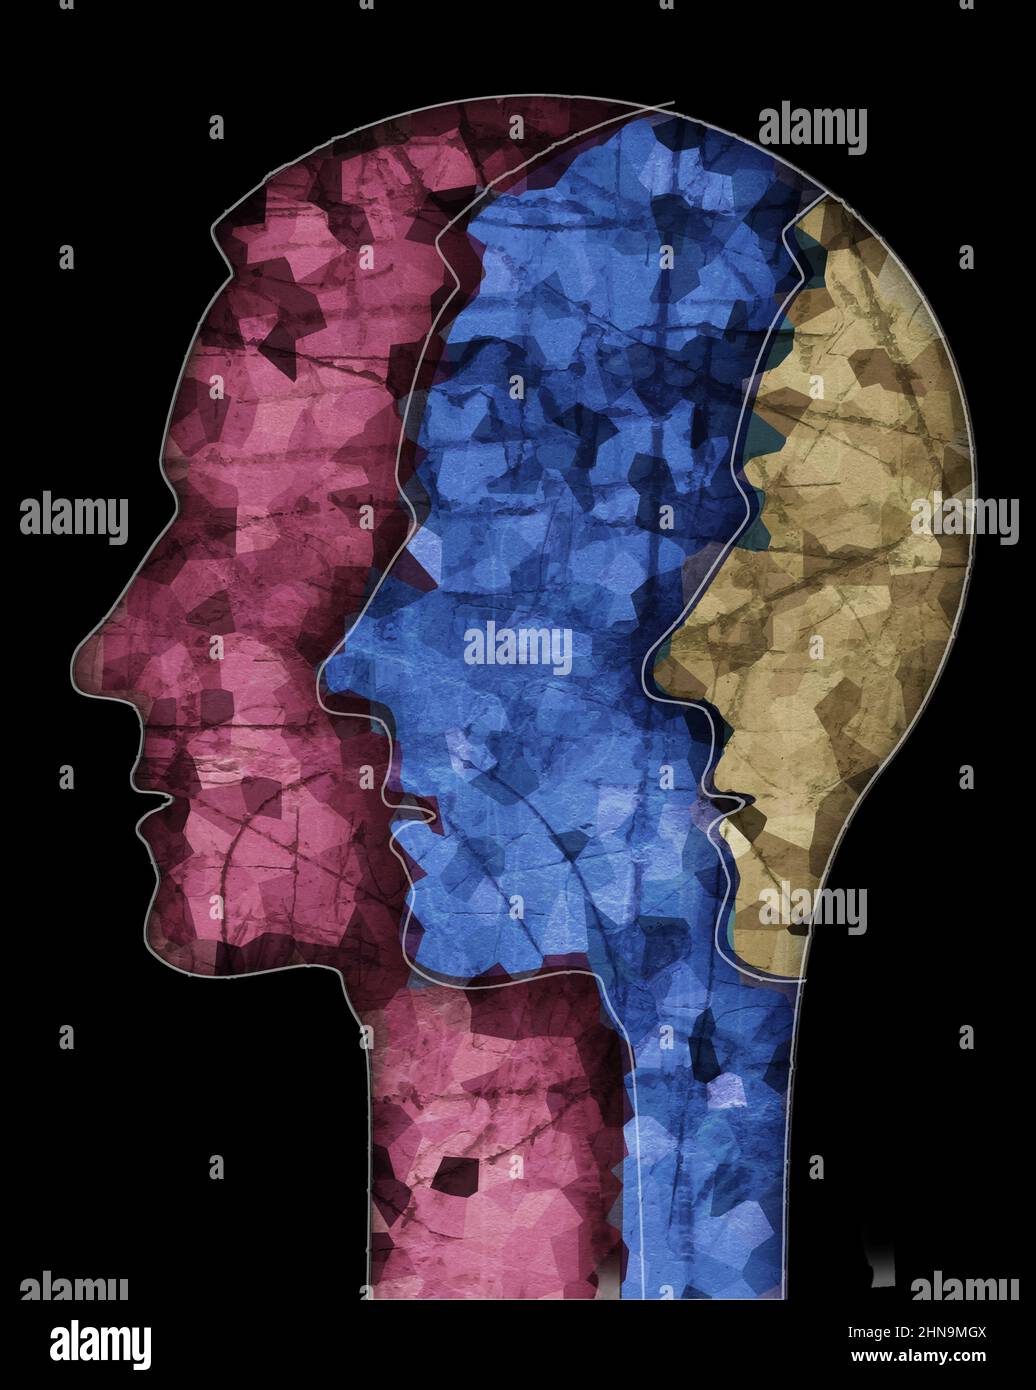 Silhouette de la tête masculine de schizophrénie. Illustration avec trois têtes mâles stylisées sur une texture grunge symbolisant la schizophrénie Dépression, diso bipolaire Banque D'Images